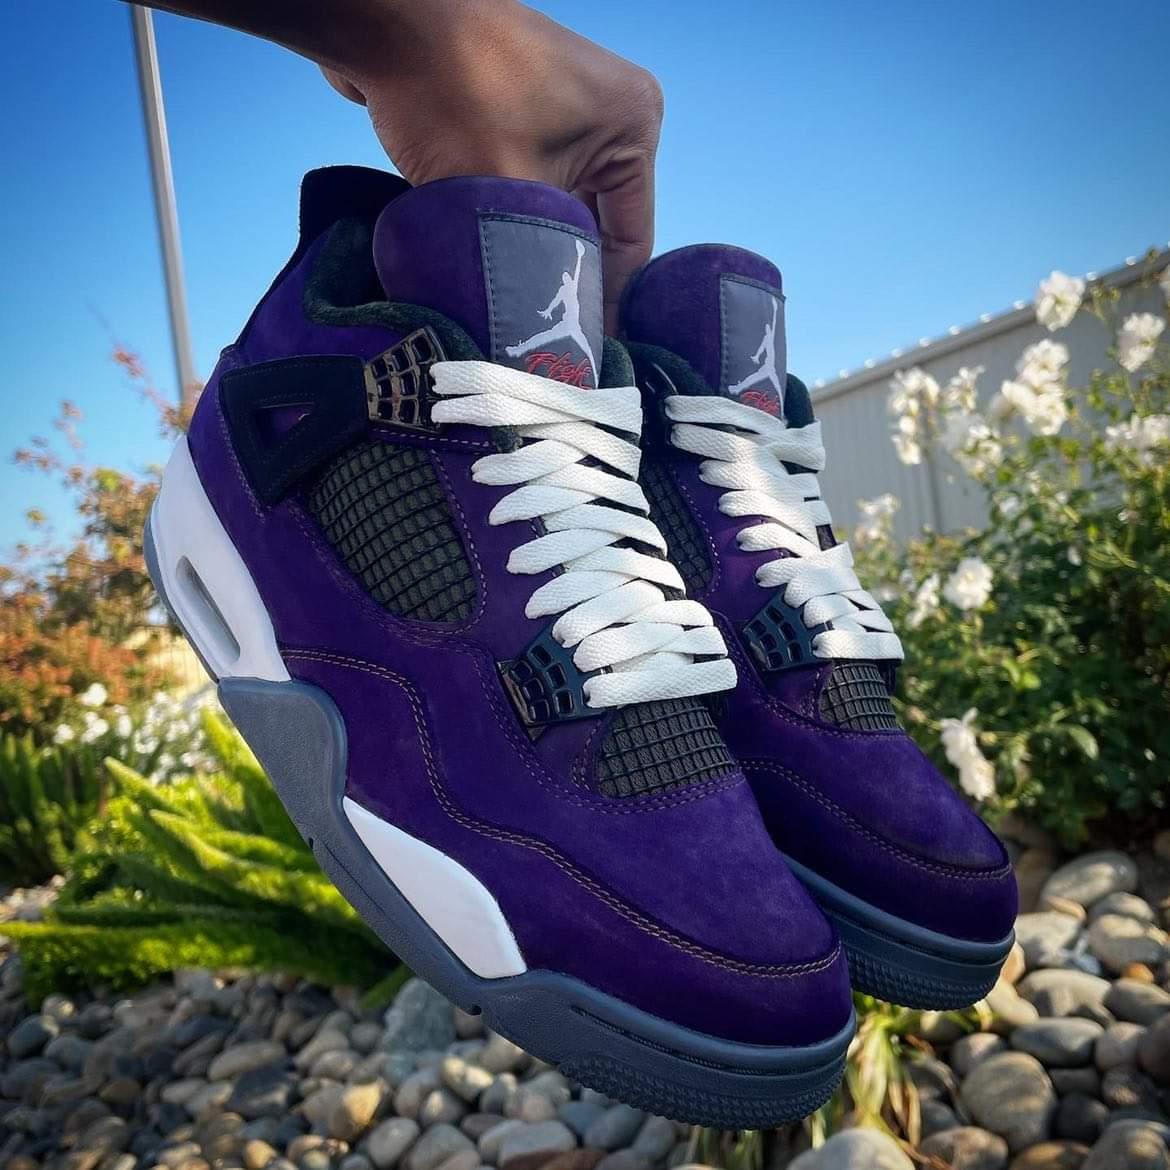 Custom Jordan 4s 